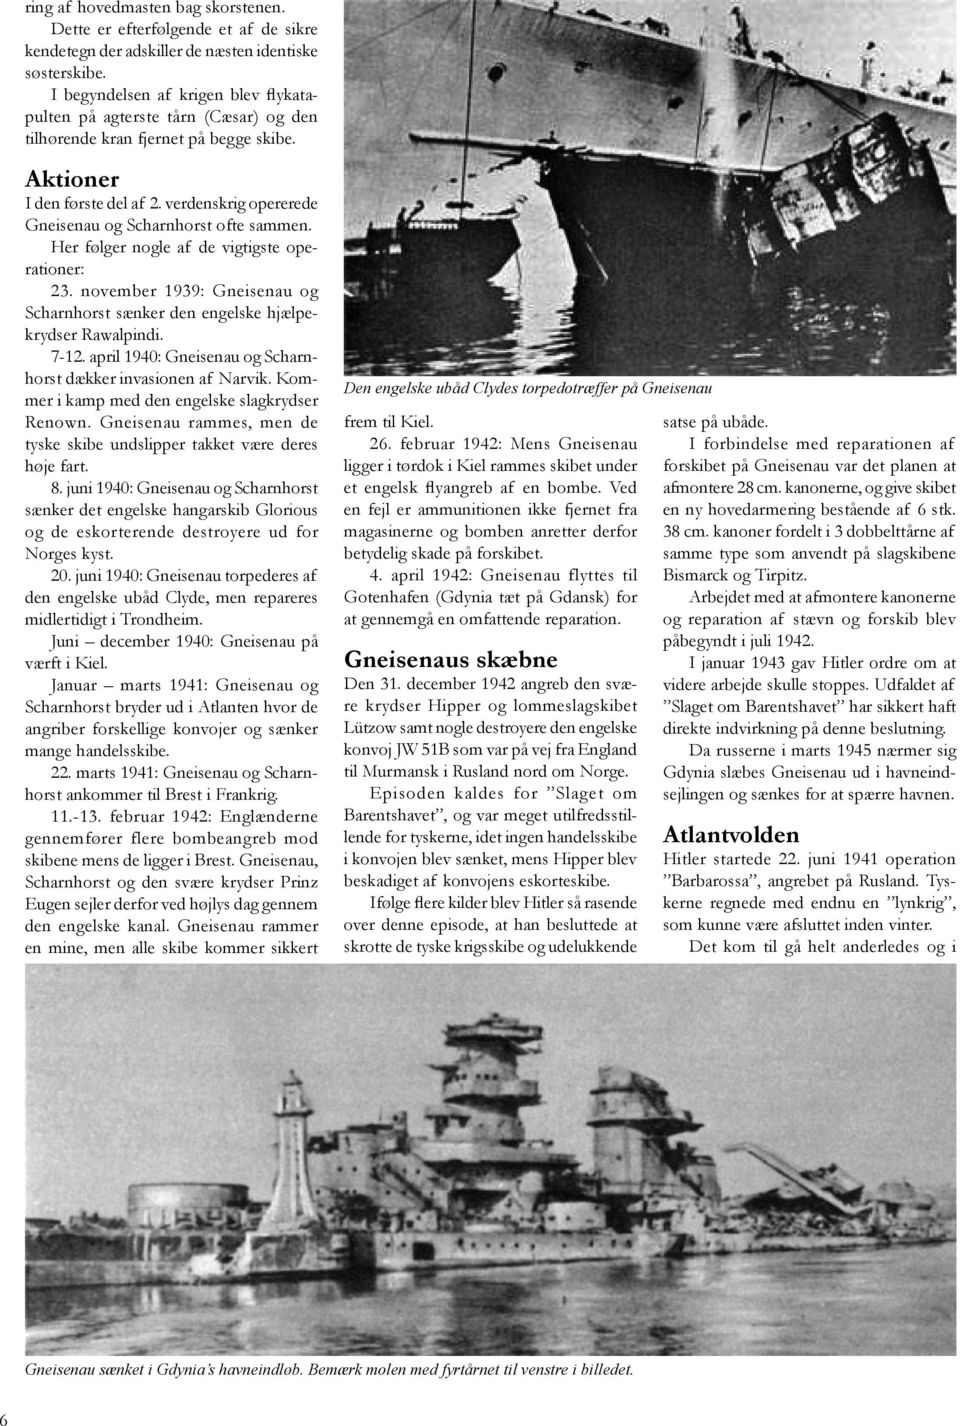 verdenskrig opererede Gneisenau og Scharnhorst ofte sammen. Her følger nogle af de vigtigste operationer: 23. november 1939: Gneisenau og Scharnhorst sænker den engelske hjælpekrydser Rawalpindi.